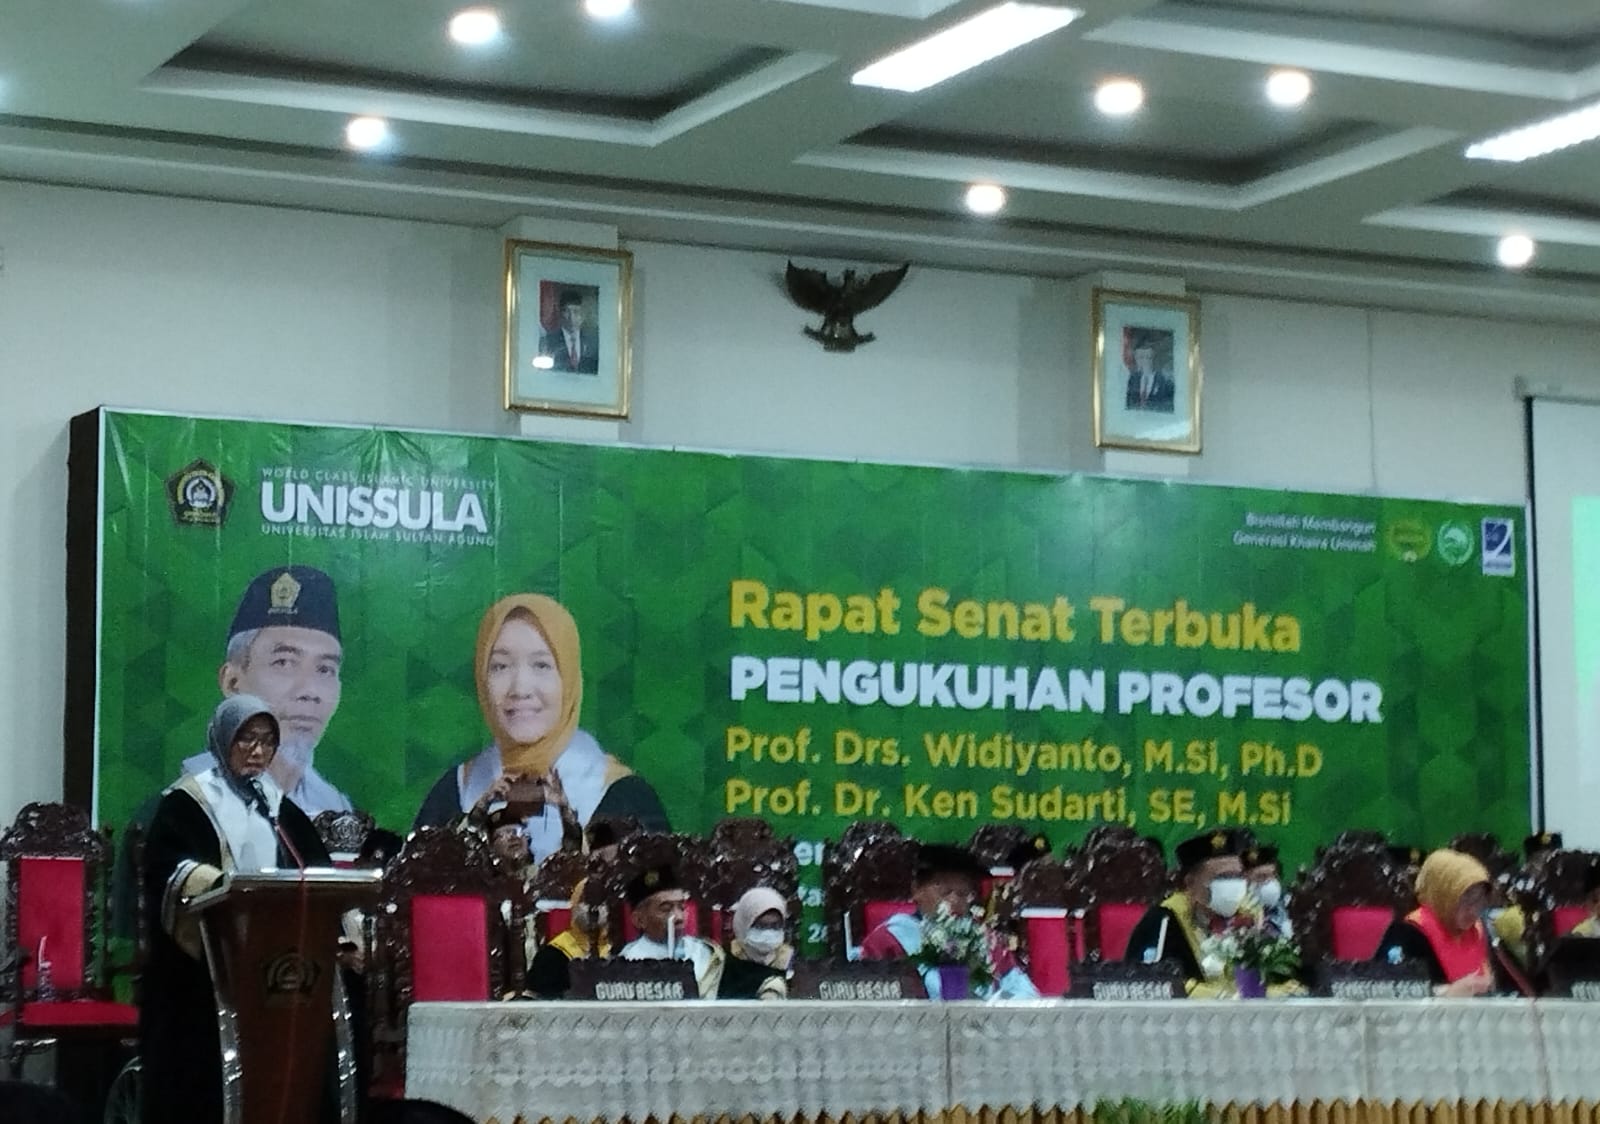 Ken Sudarti Guru Besar yang Baru Dilantik itu Ternyata Warga LDII Semarang